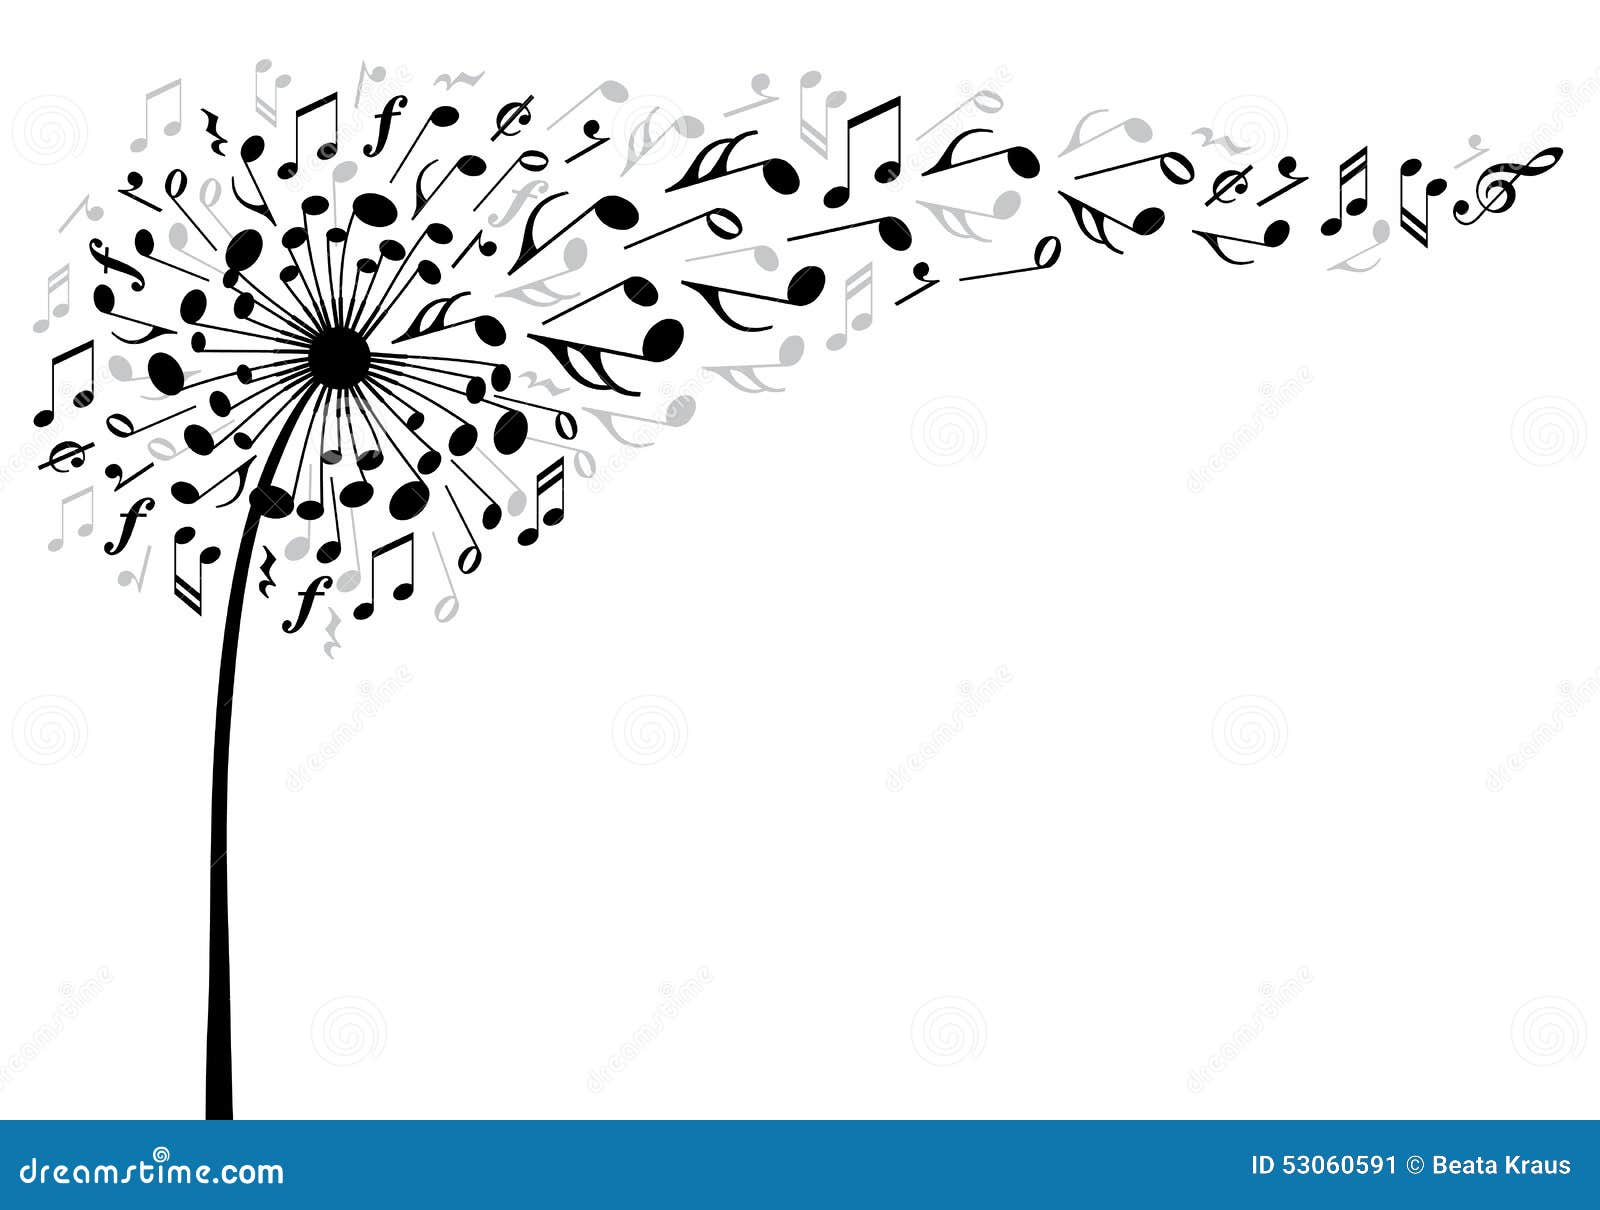 music dandelion flower, 